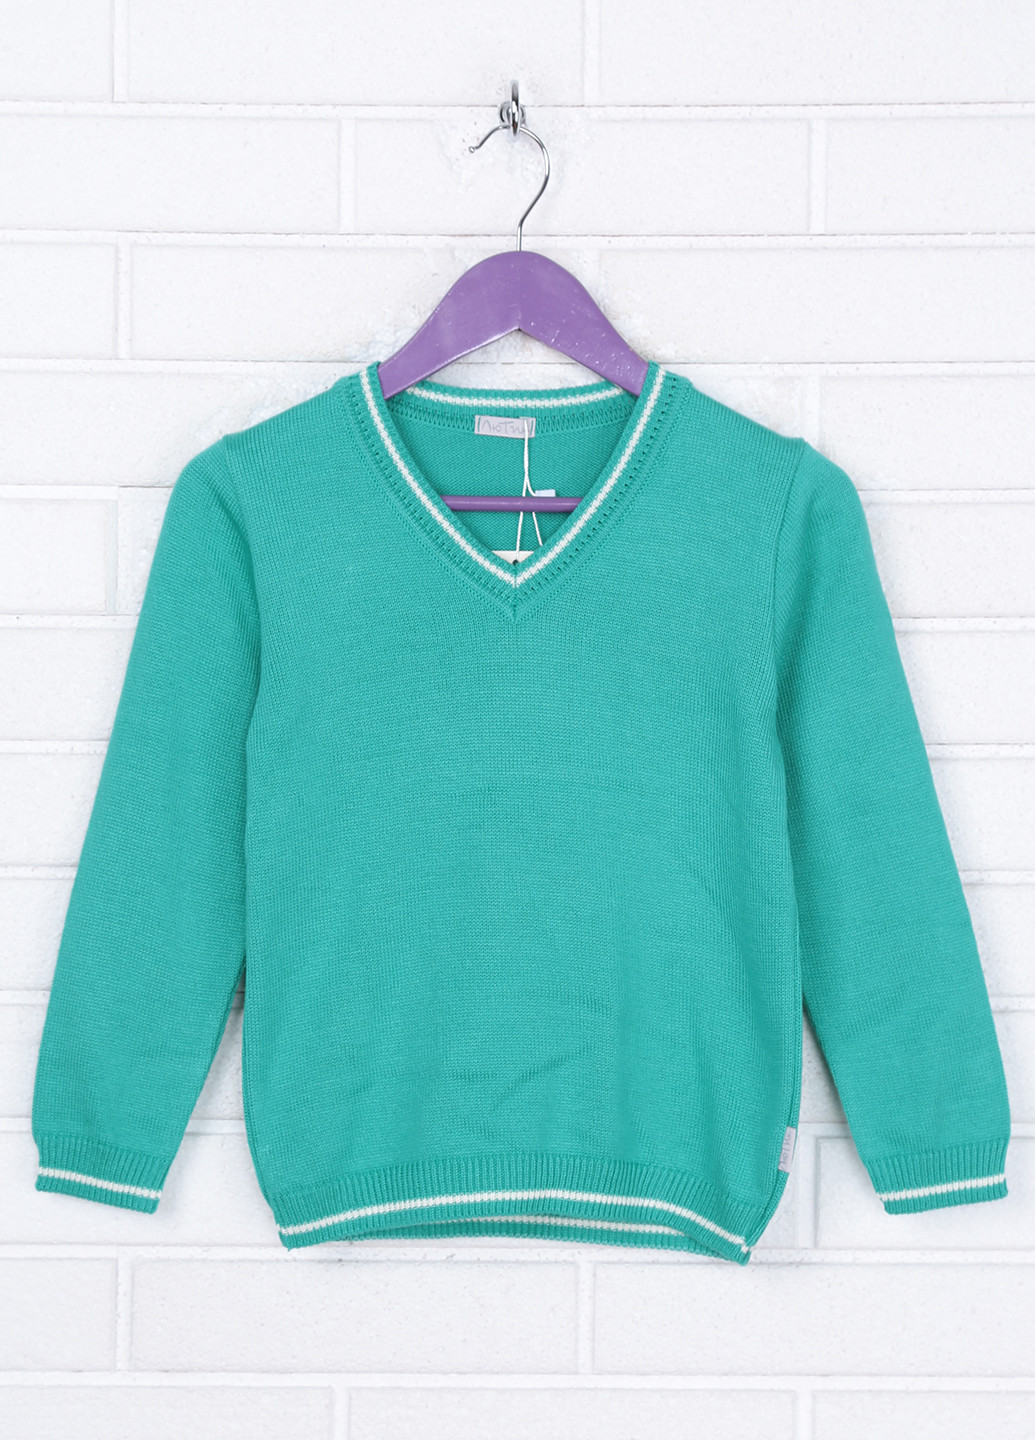 Зеленый демисезонный пуловер пуловер Лютик